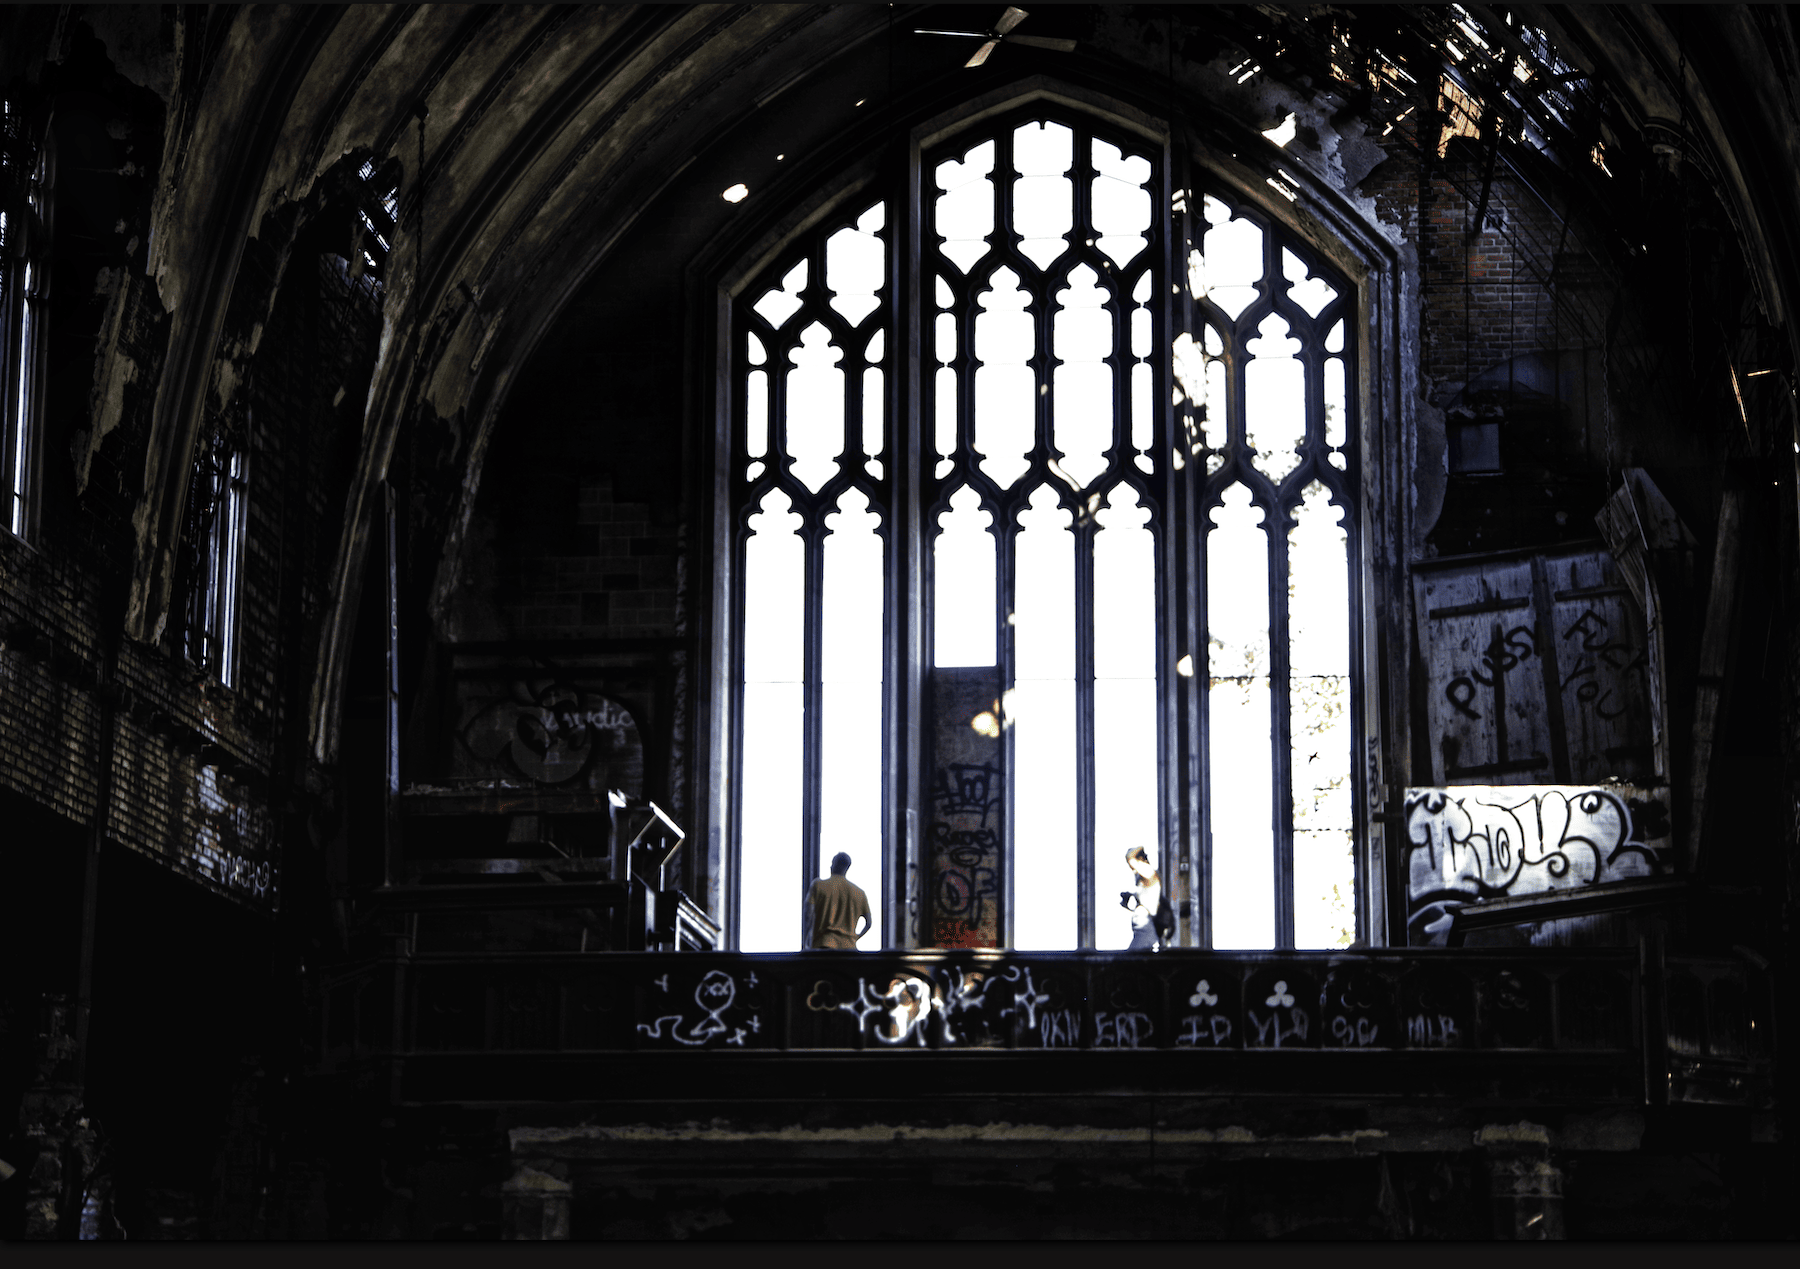 Choir balcony, St Agnes Church, Detroit.